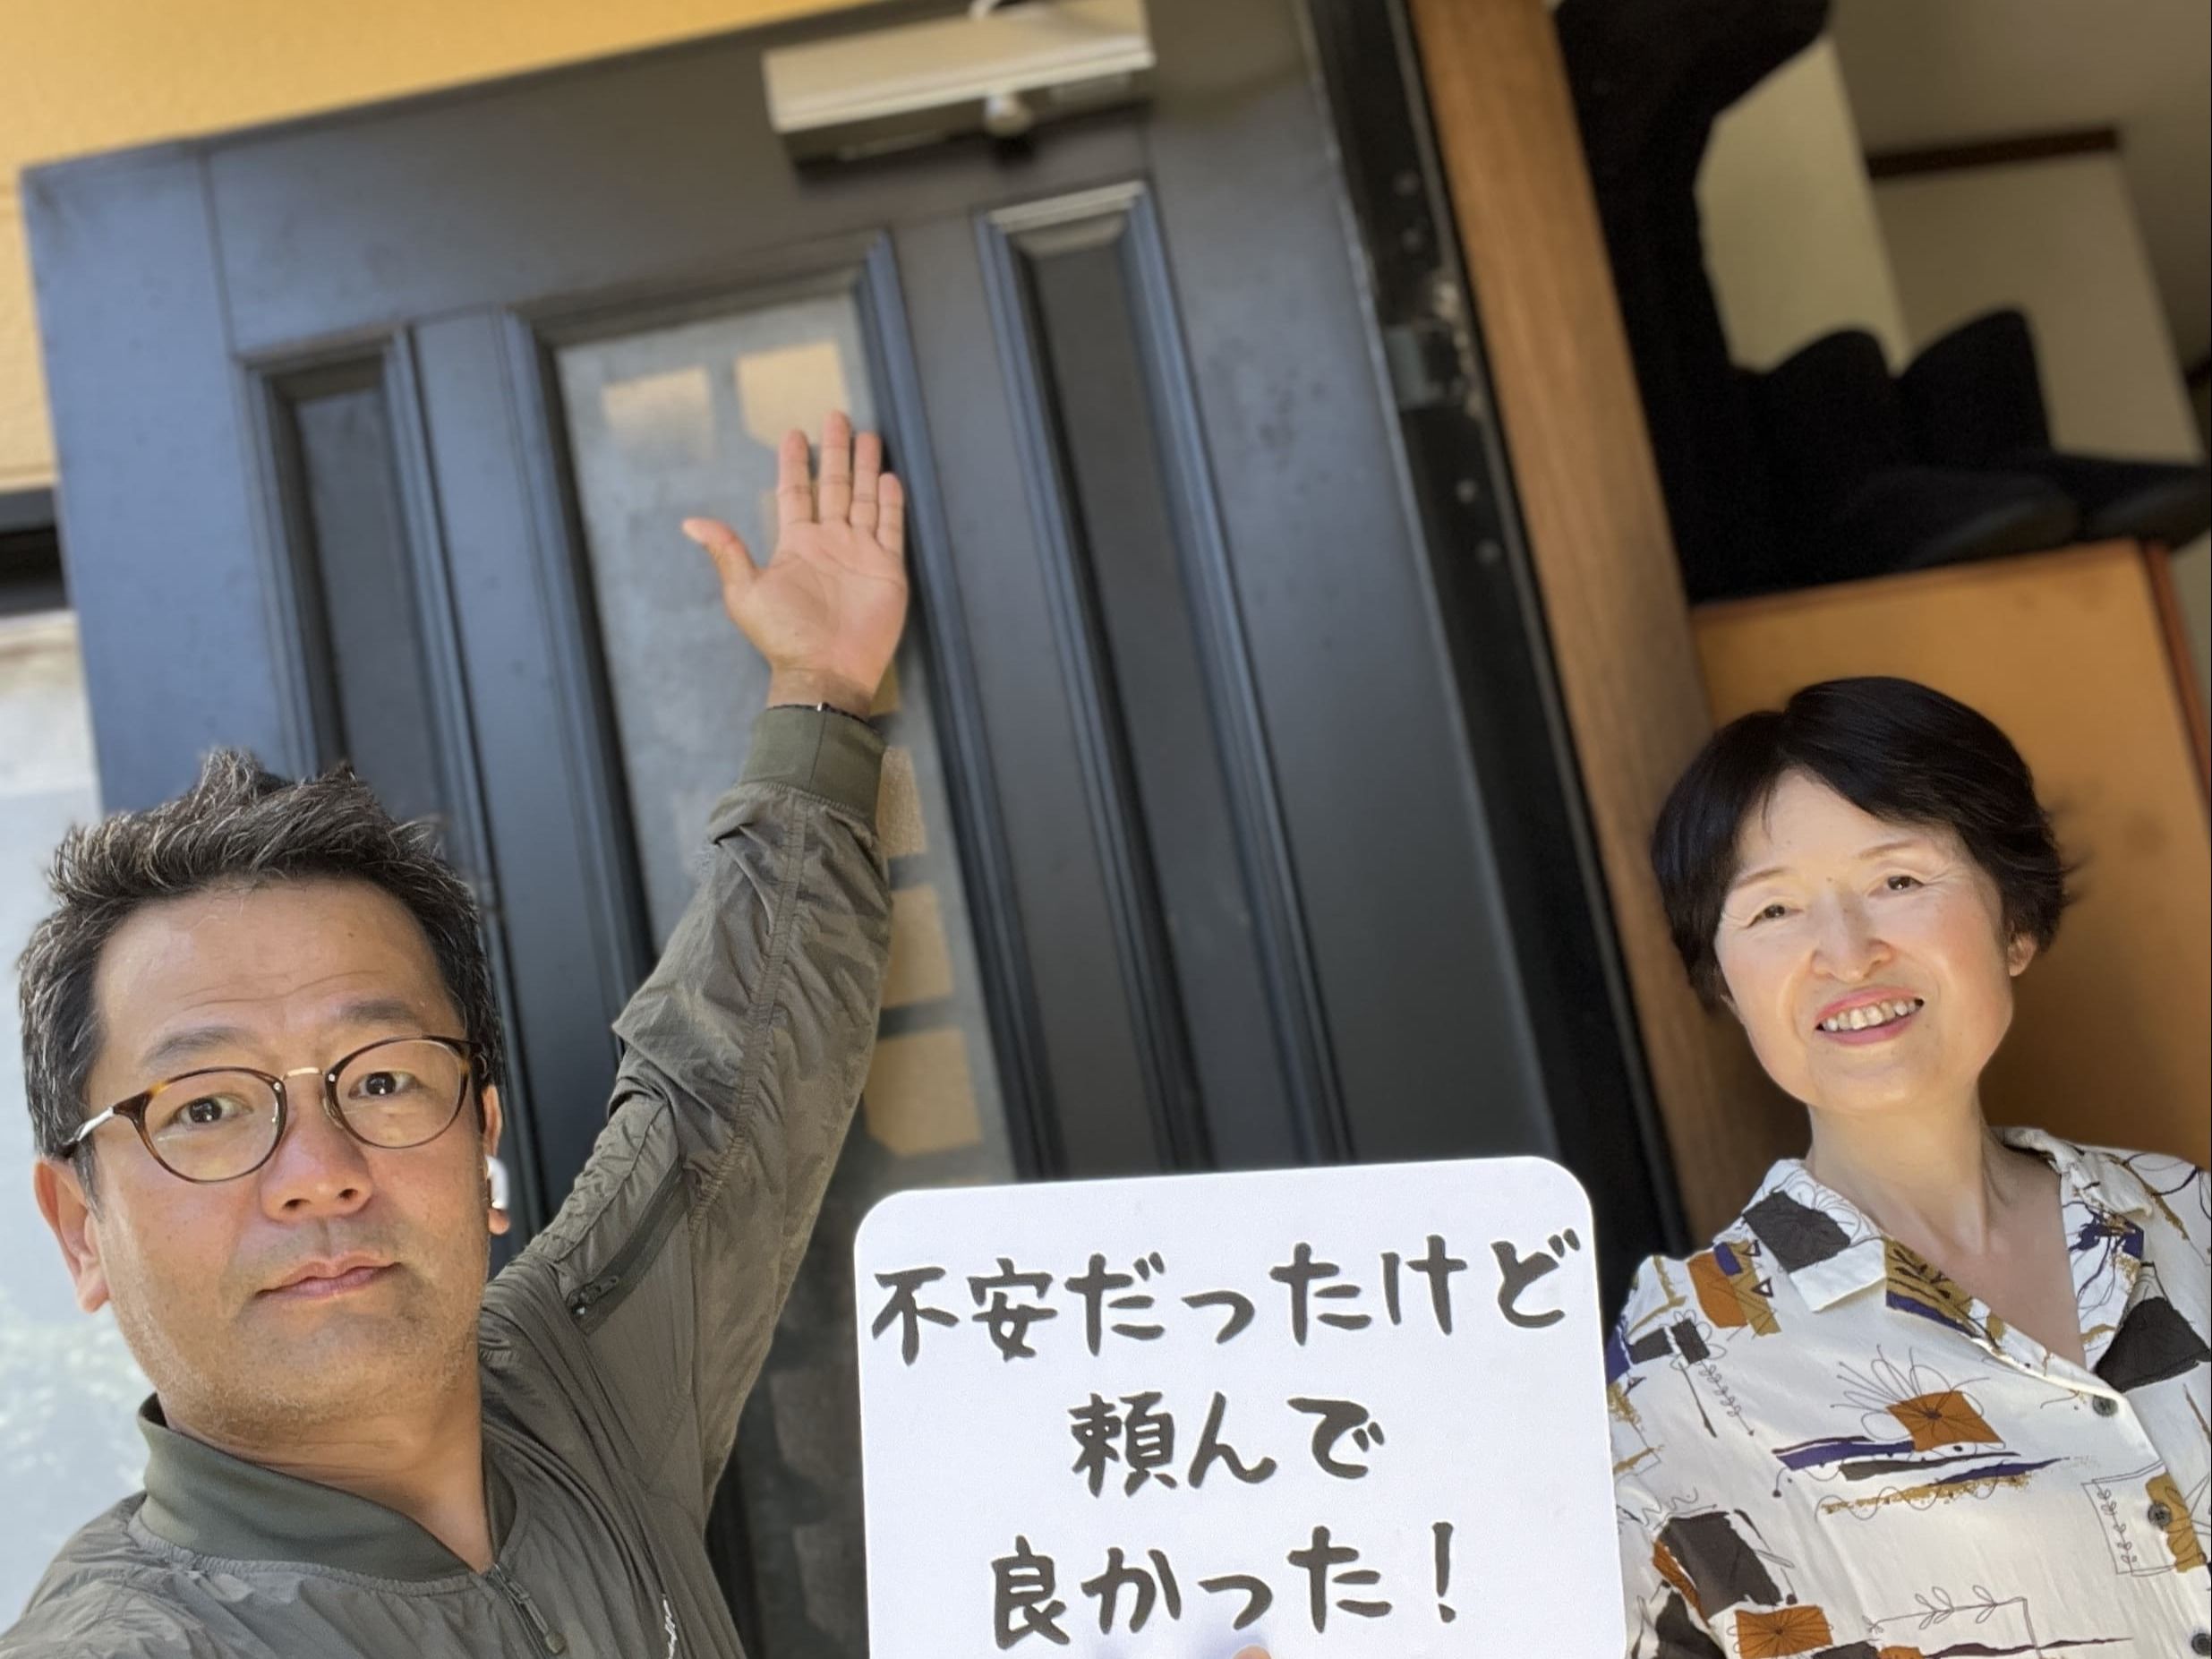 【町田市地域】カギとドア修理コバヤシの店内・外観画像3